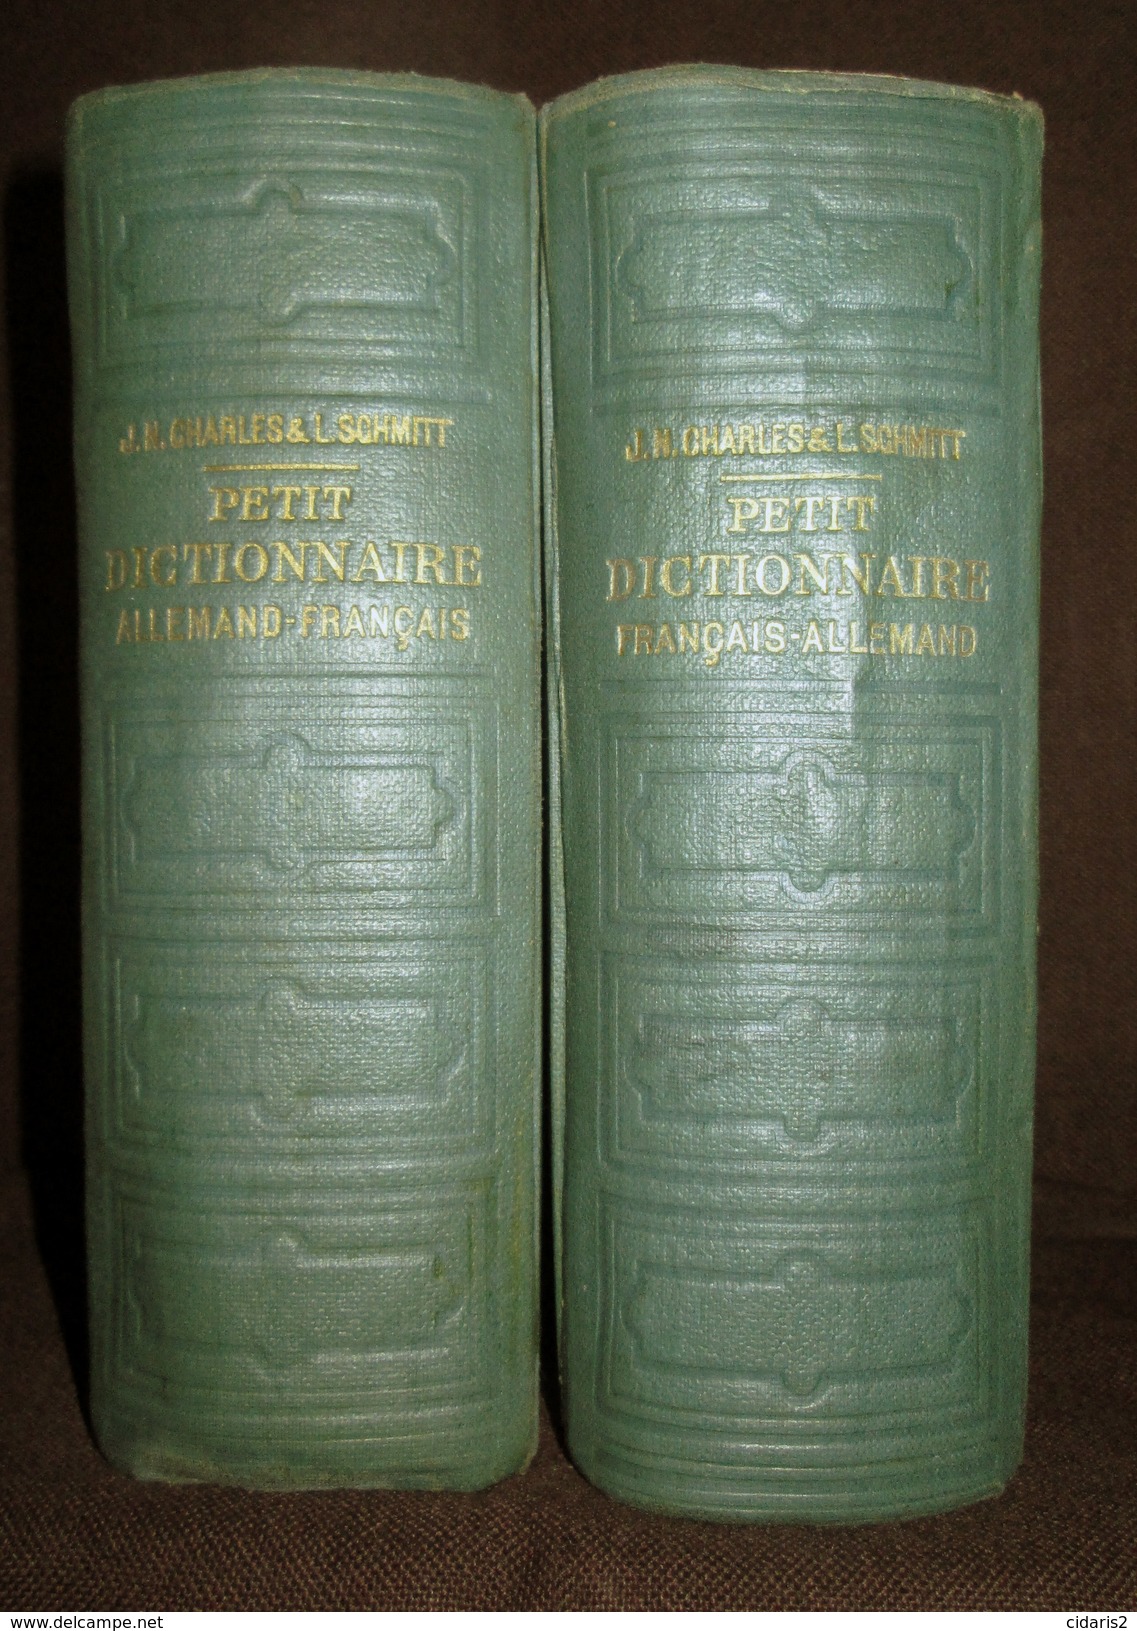 PETIT DICTIONNAIRE FRANCAIS ALLEMAND Franzosisch Deutsch Worterbuch Dictionary CHARLES SCHMITT 2 Volumes 1940 ! - Dictionnaires